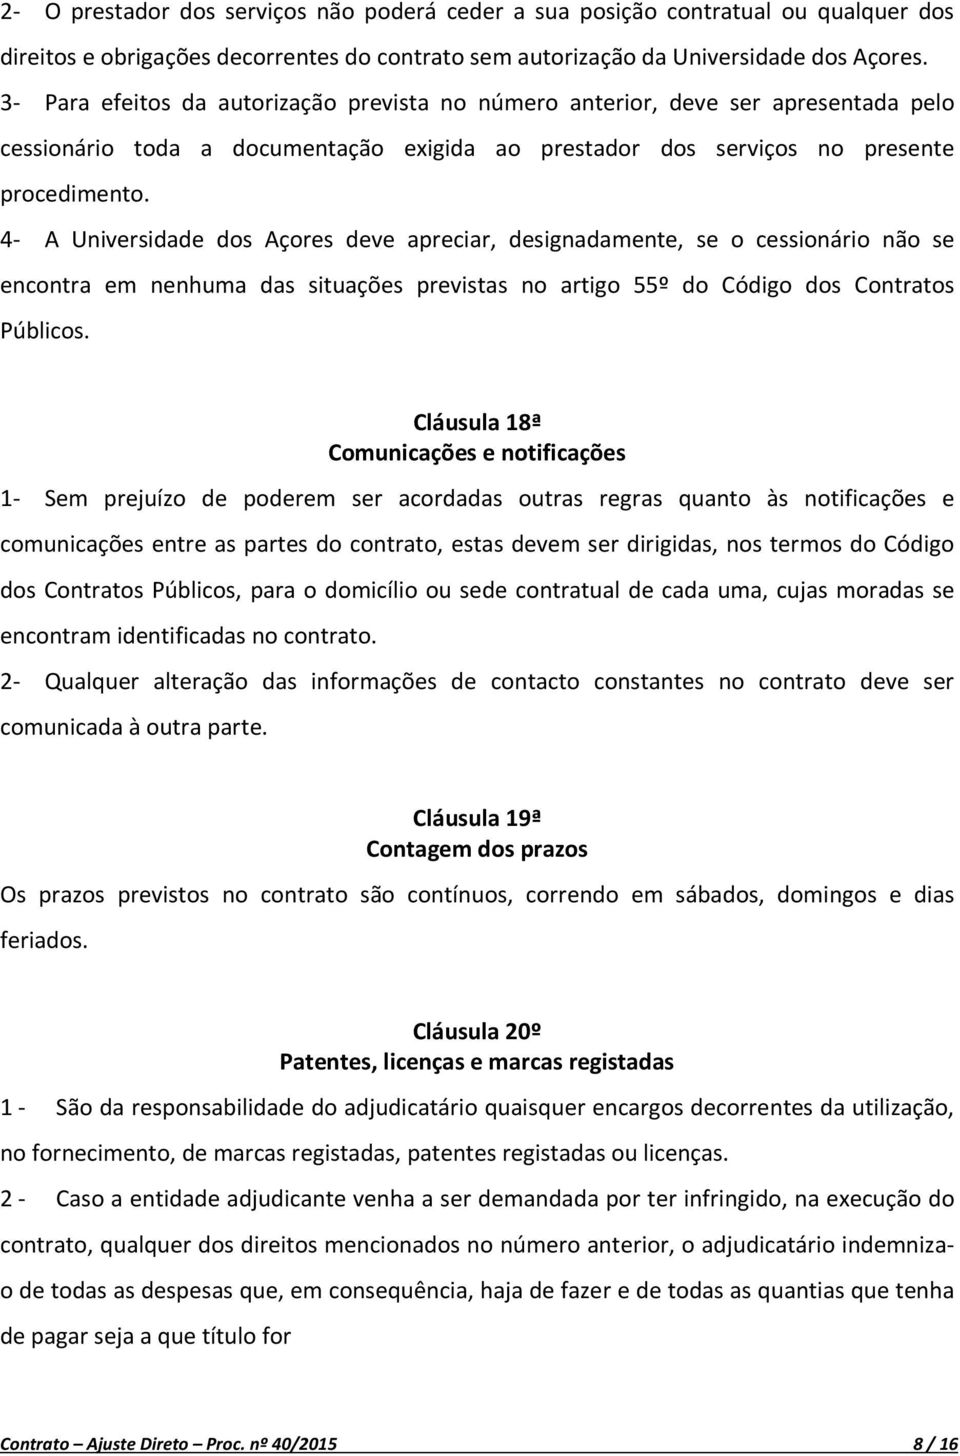 4- A Universidade dos Açores deve apreciar, designadamente, se o cessionário não se encontra em nenhuma das situações previstas no artigo 55º do Código dos Contratos Públicos.